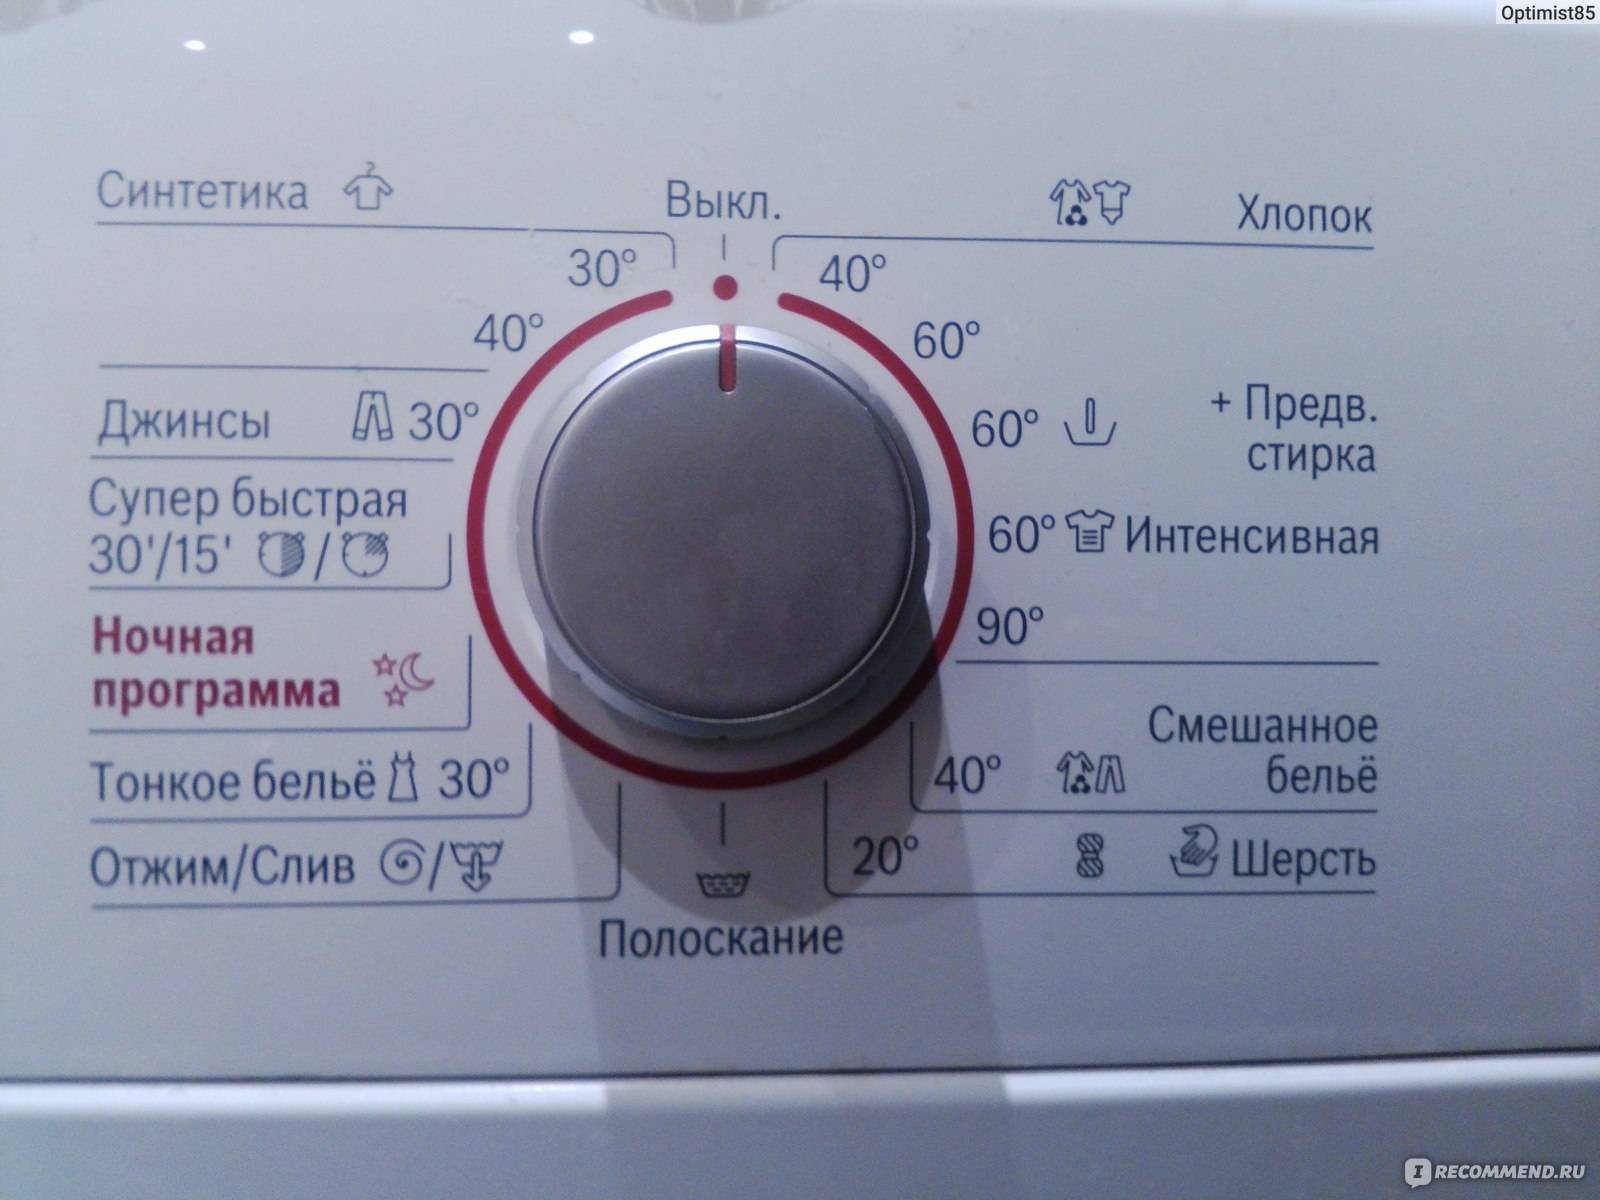 Топ лучших стиральных машин бош: обзор популярных моделей